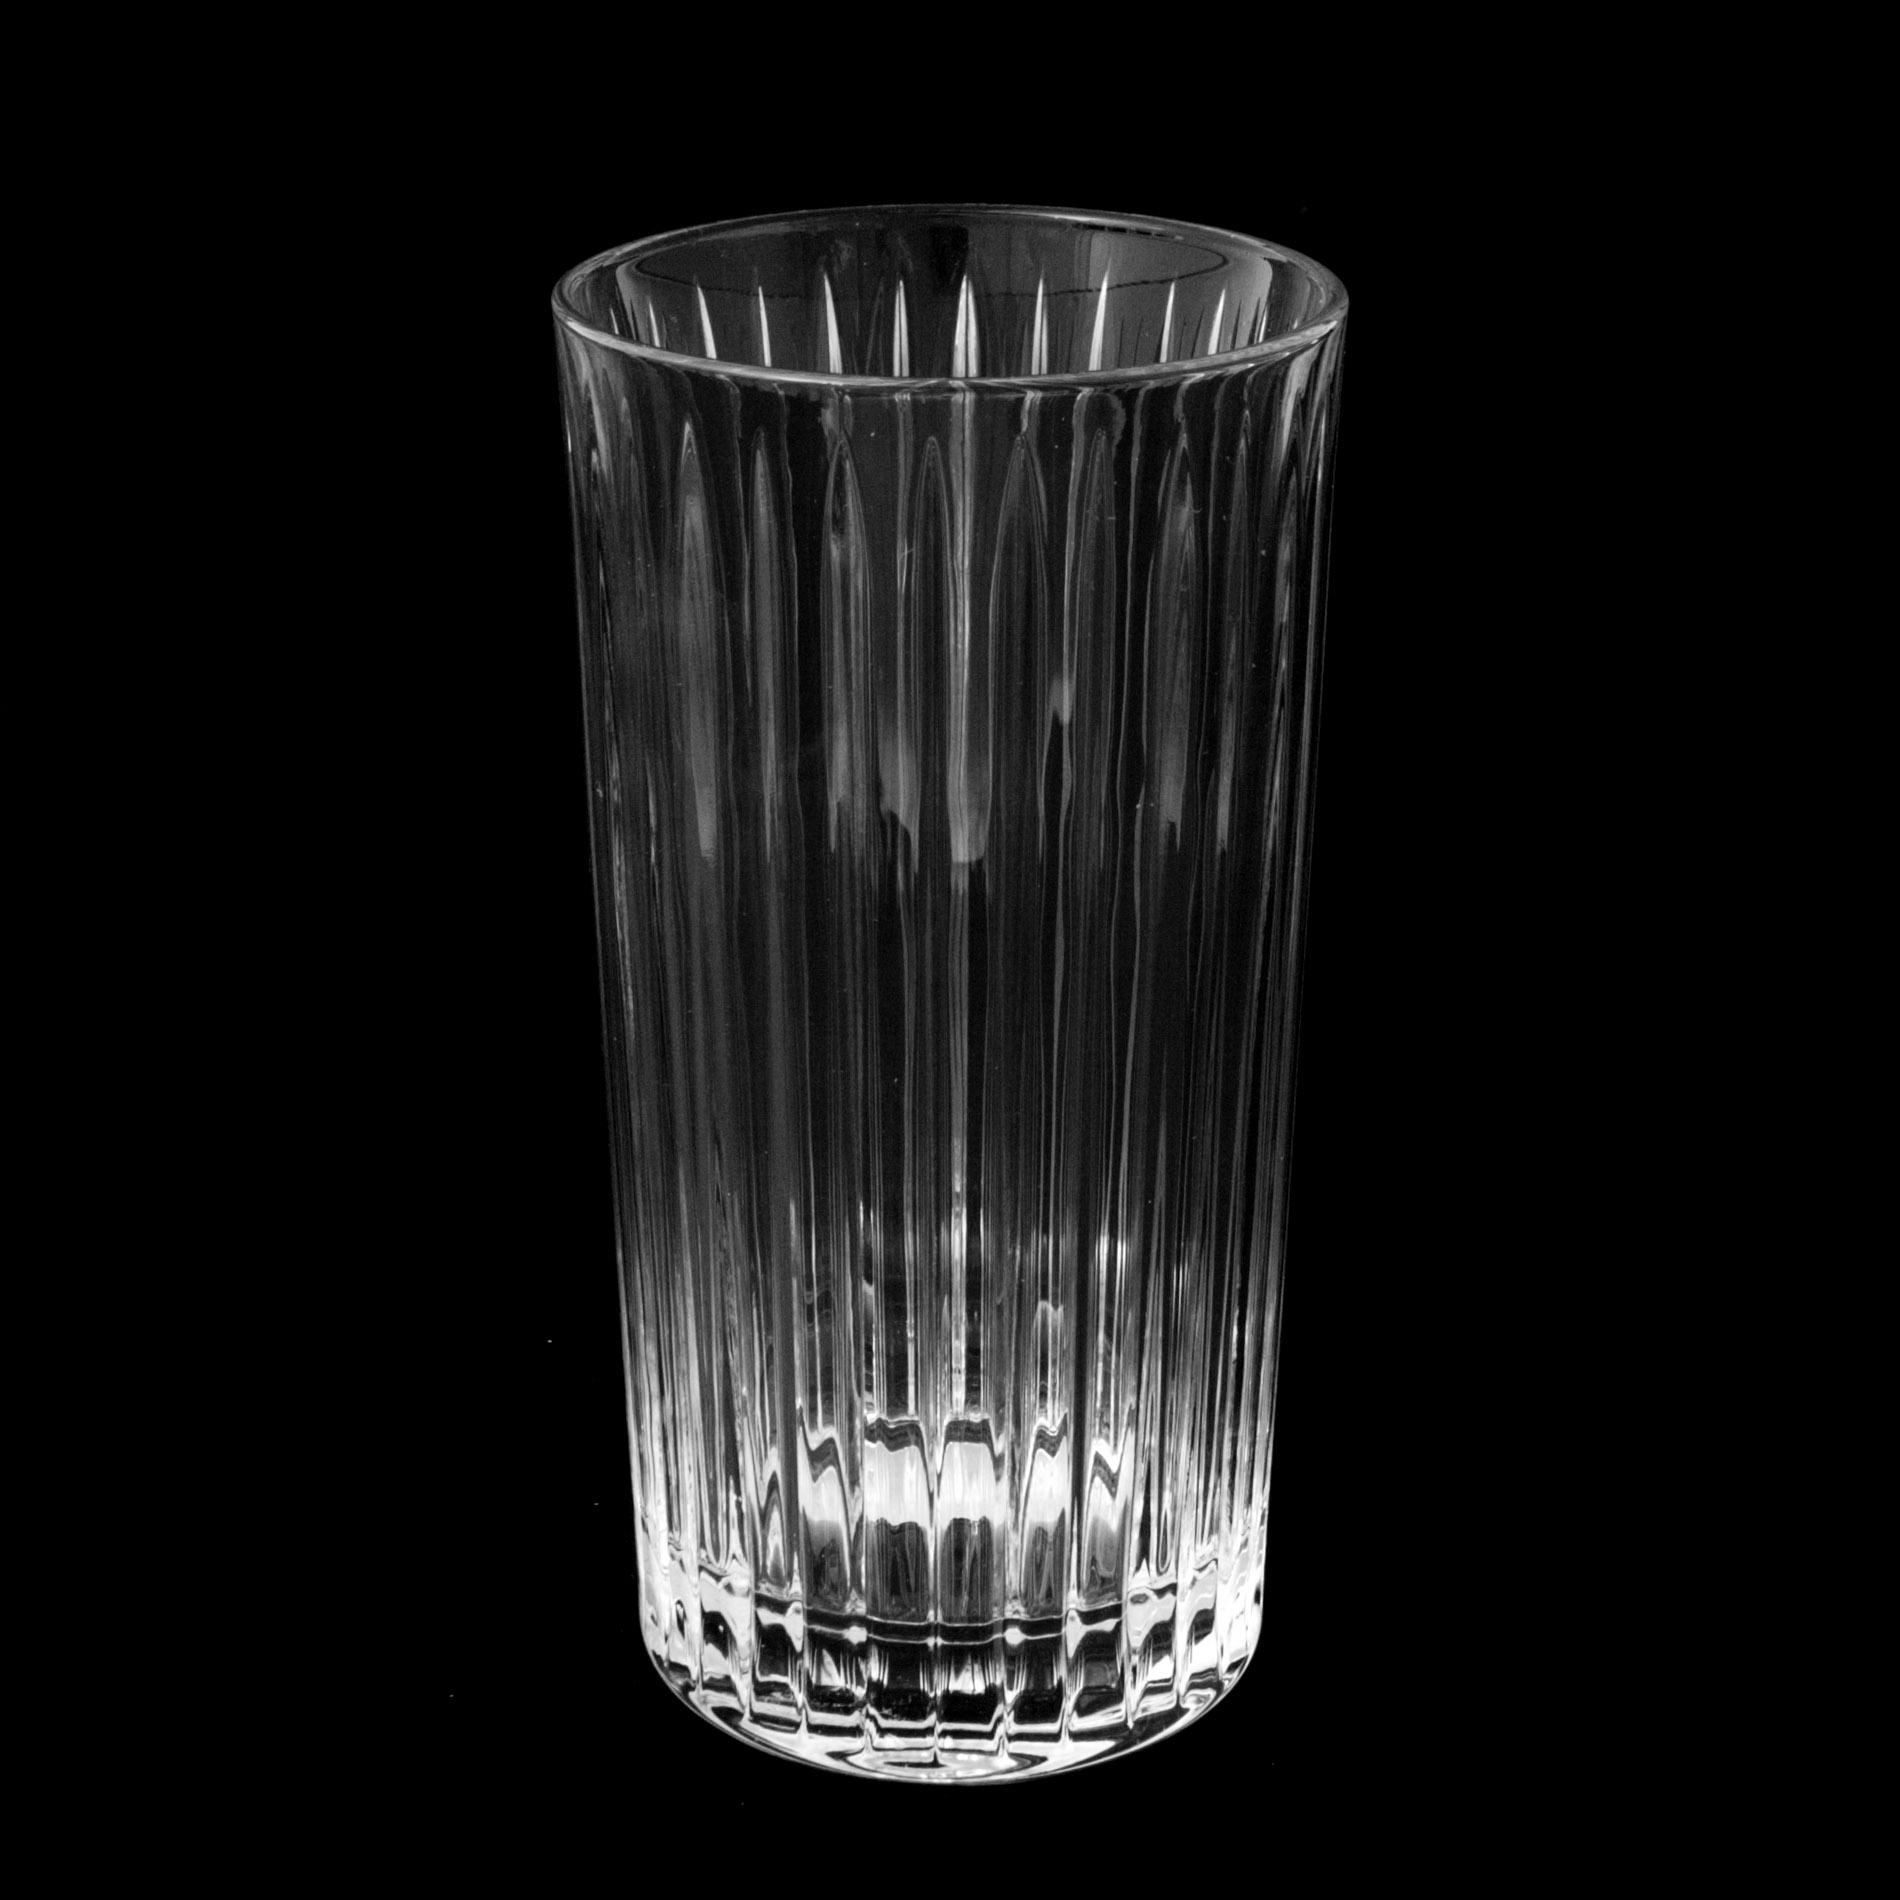 Набор стаканов для воды skyline 350мл 6шт Crystal bohemia a.s. набор стаканов для воды elise 350мл 6шт crystal bohemia 990 22500 0 64300 350 609